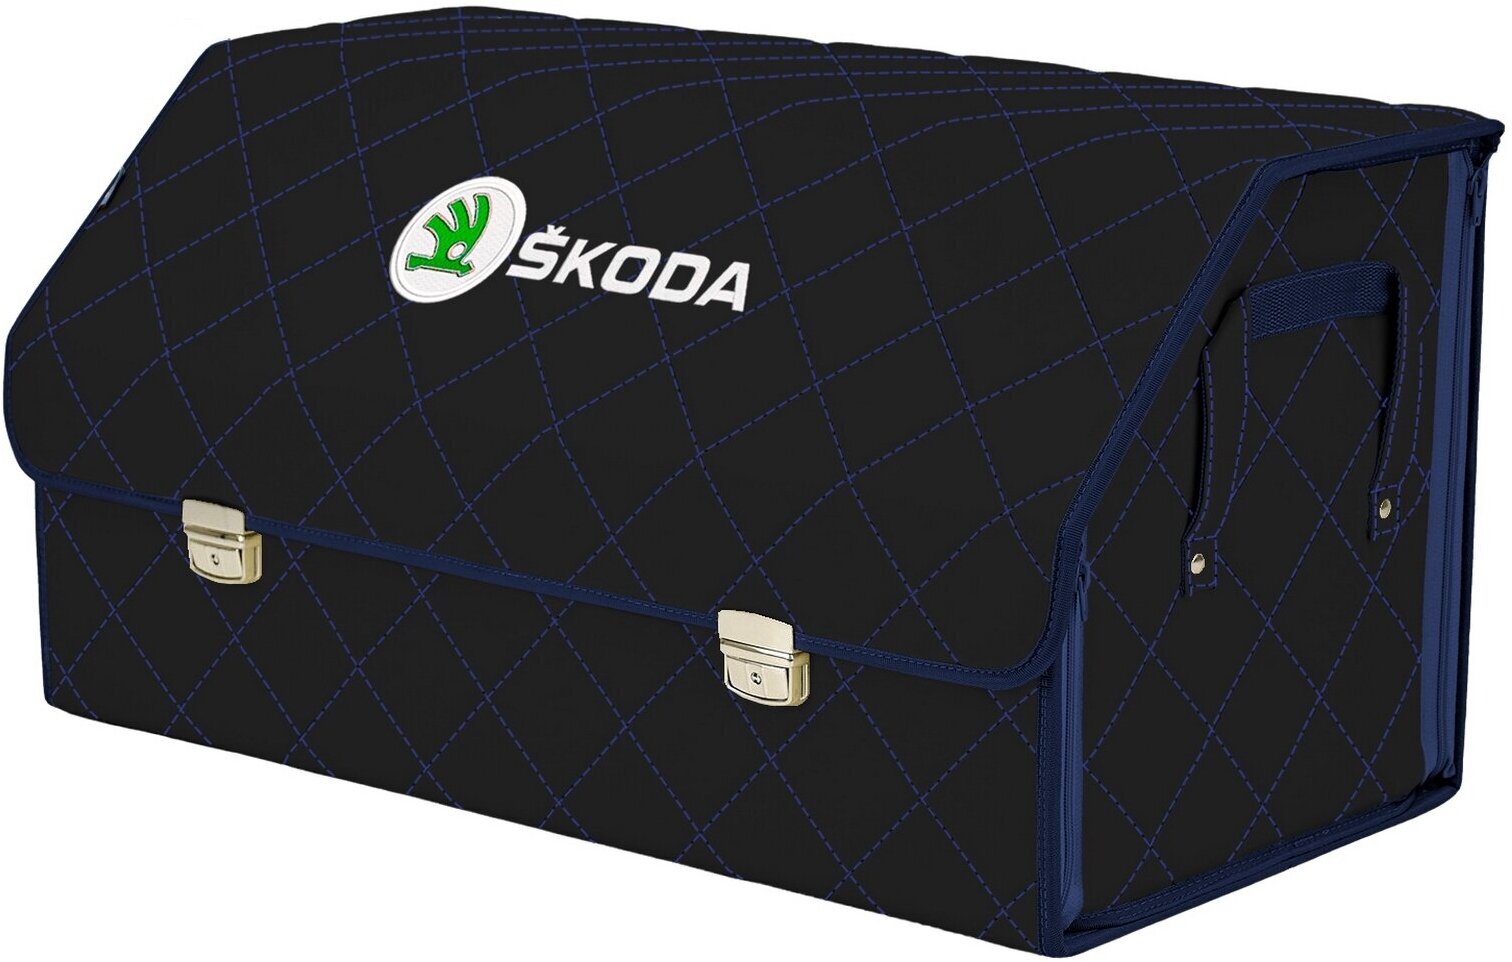 Органайзер-саквояж в багажник "Союз Премиум" (размер XL Plus). Цвет: черный с синей прострочкой Ромб и вышивкой Skoda (Шкода).